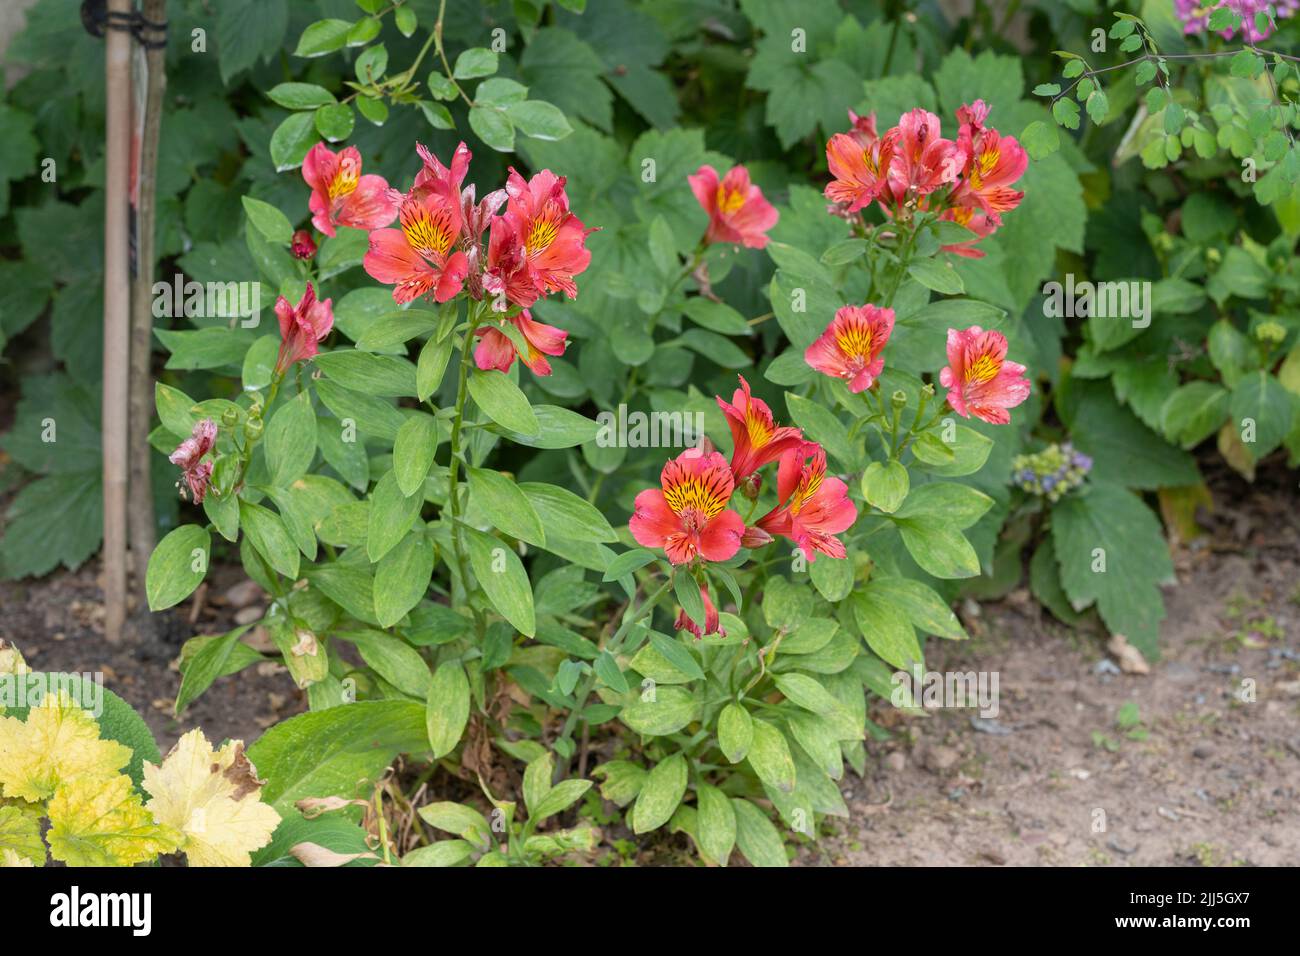 Alstroemeria × hybrida (un hybride aussi connu sous le nom de rose nénuphar péruvien ou lys des Incas) fleurit dans un jardin en Angleterre en juillet Banque D'Images